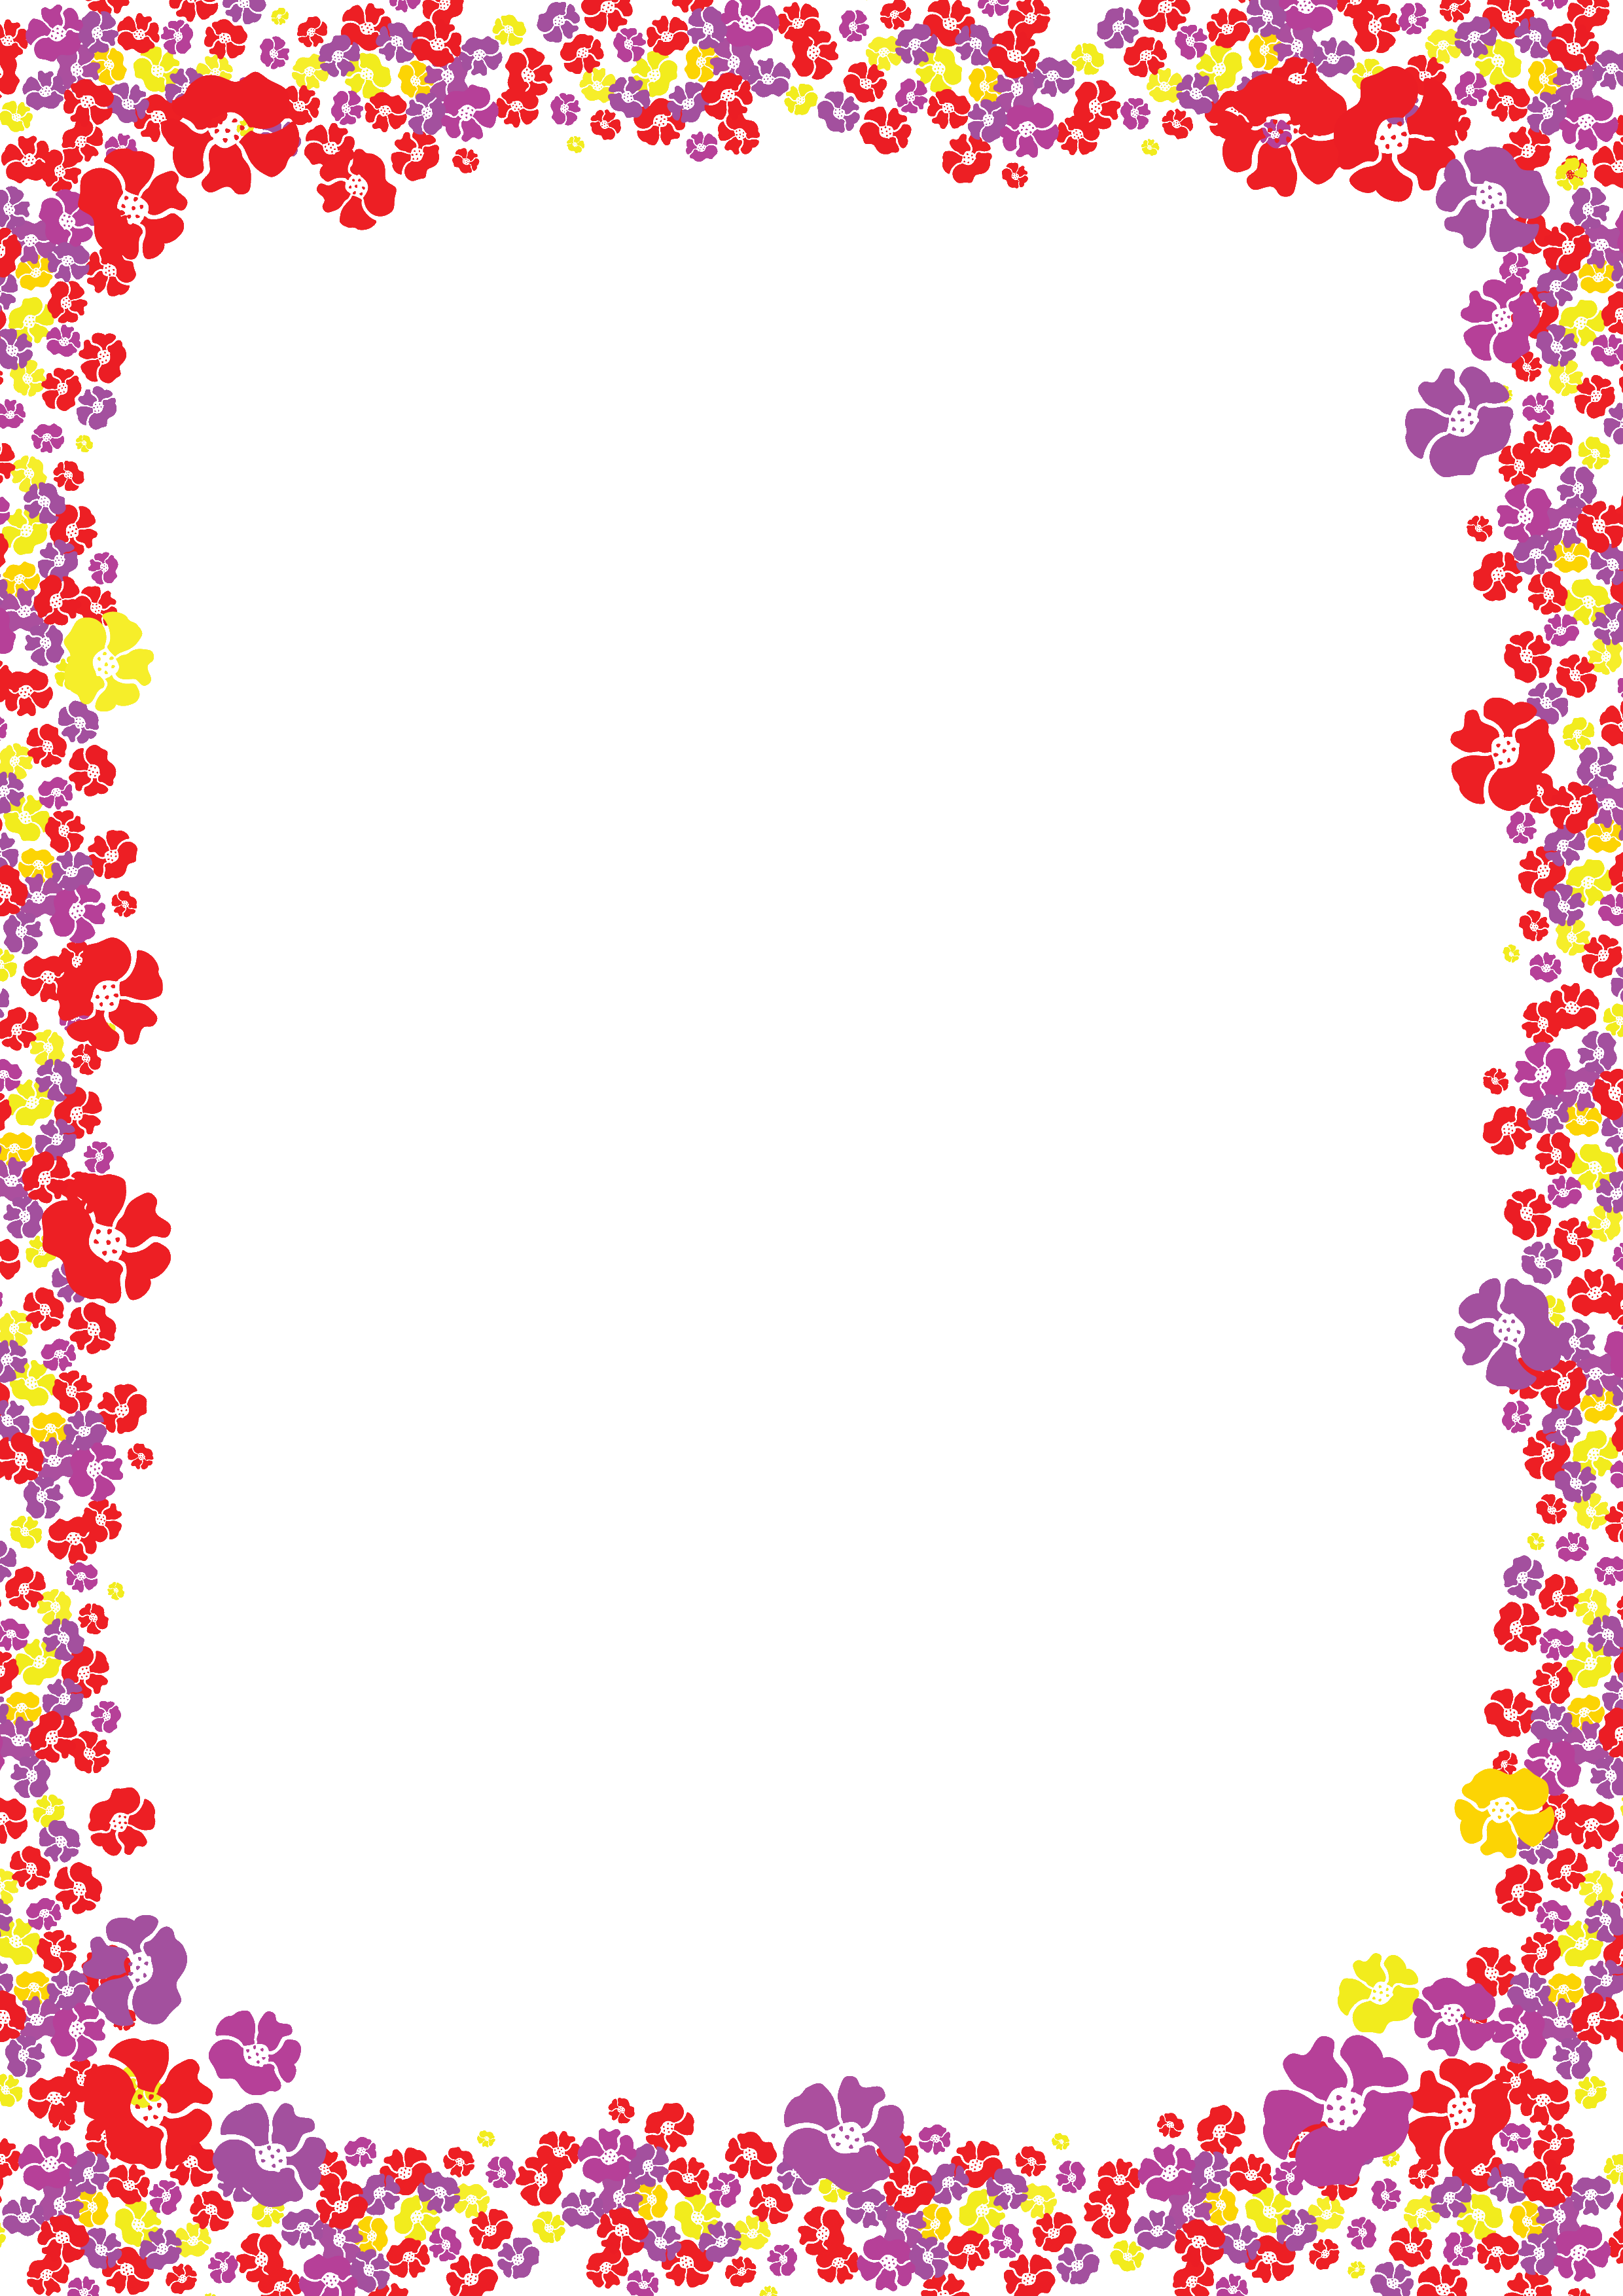 壁紙 背景イラスト 花のフレーム 外枠 No 018 カラフル 大小 透過色